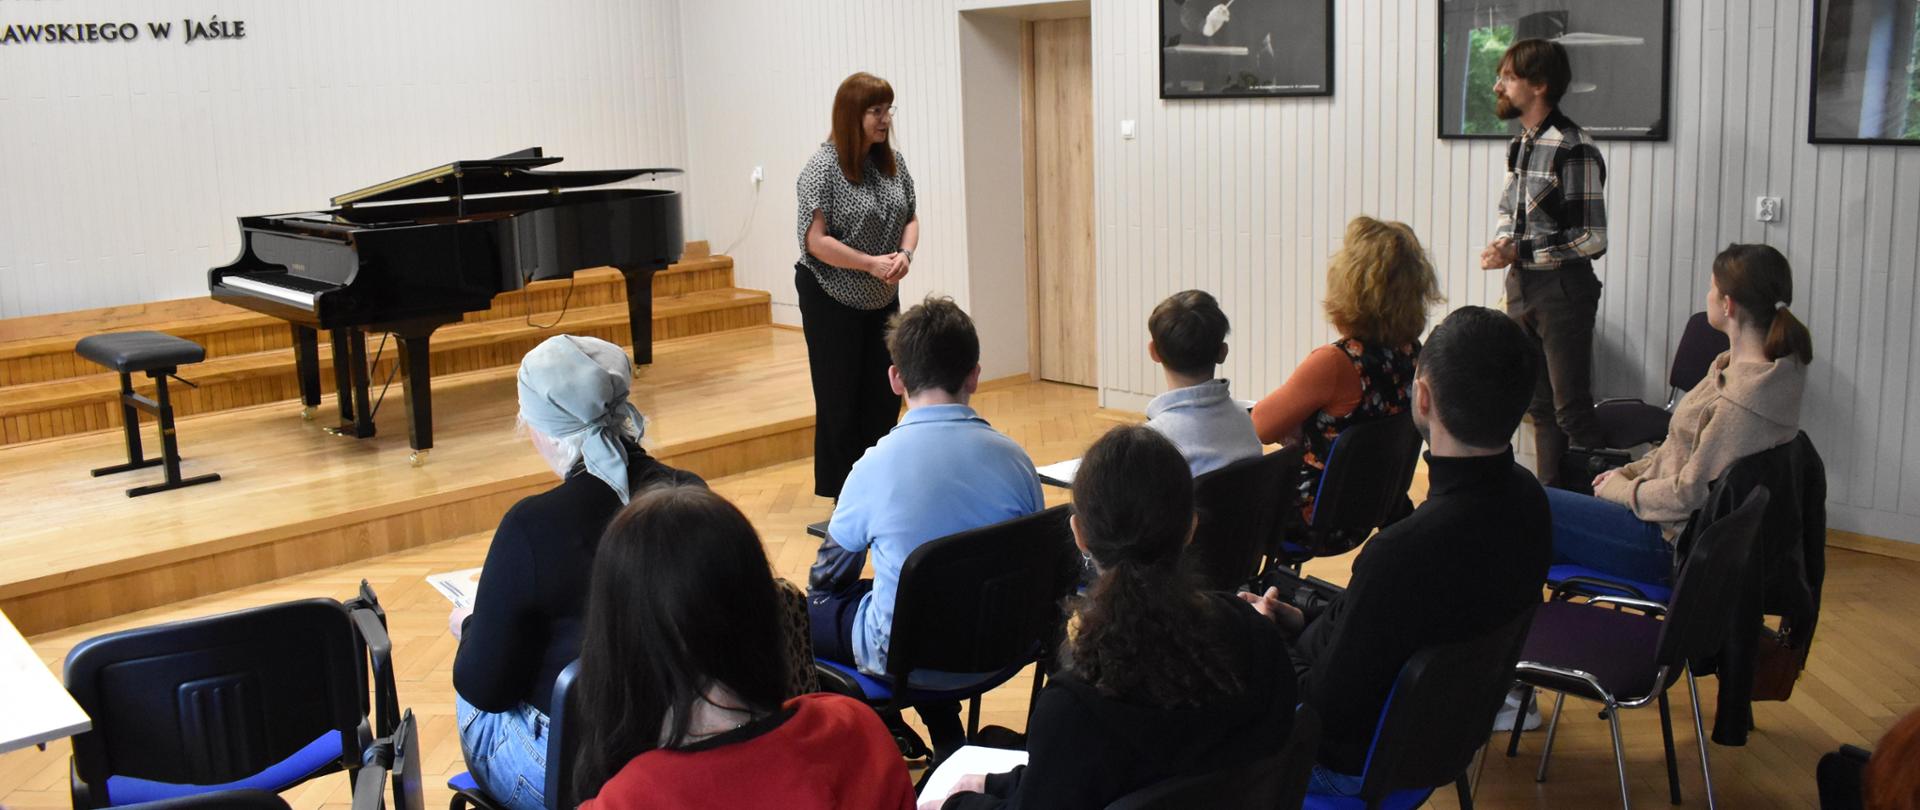 w auli PSM, podczas warsztatów pianistycznych widnieje p.dyrektor PSM I st. w Jaśle, która wita prowadzącego warsztaty pianistę oraz zgromadzoną społeczność szkolną. Kolorystyka zdjęcia jest biało-szaro-niebiesko-czerwono-czarna. 